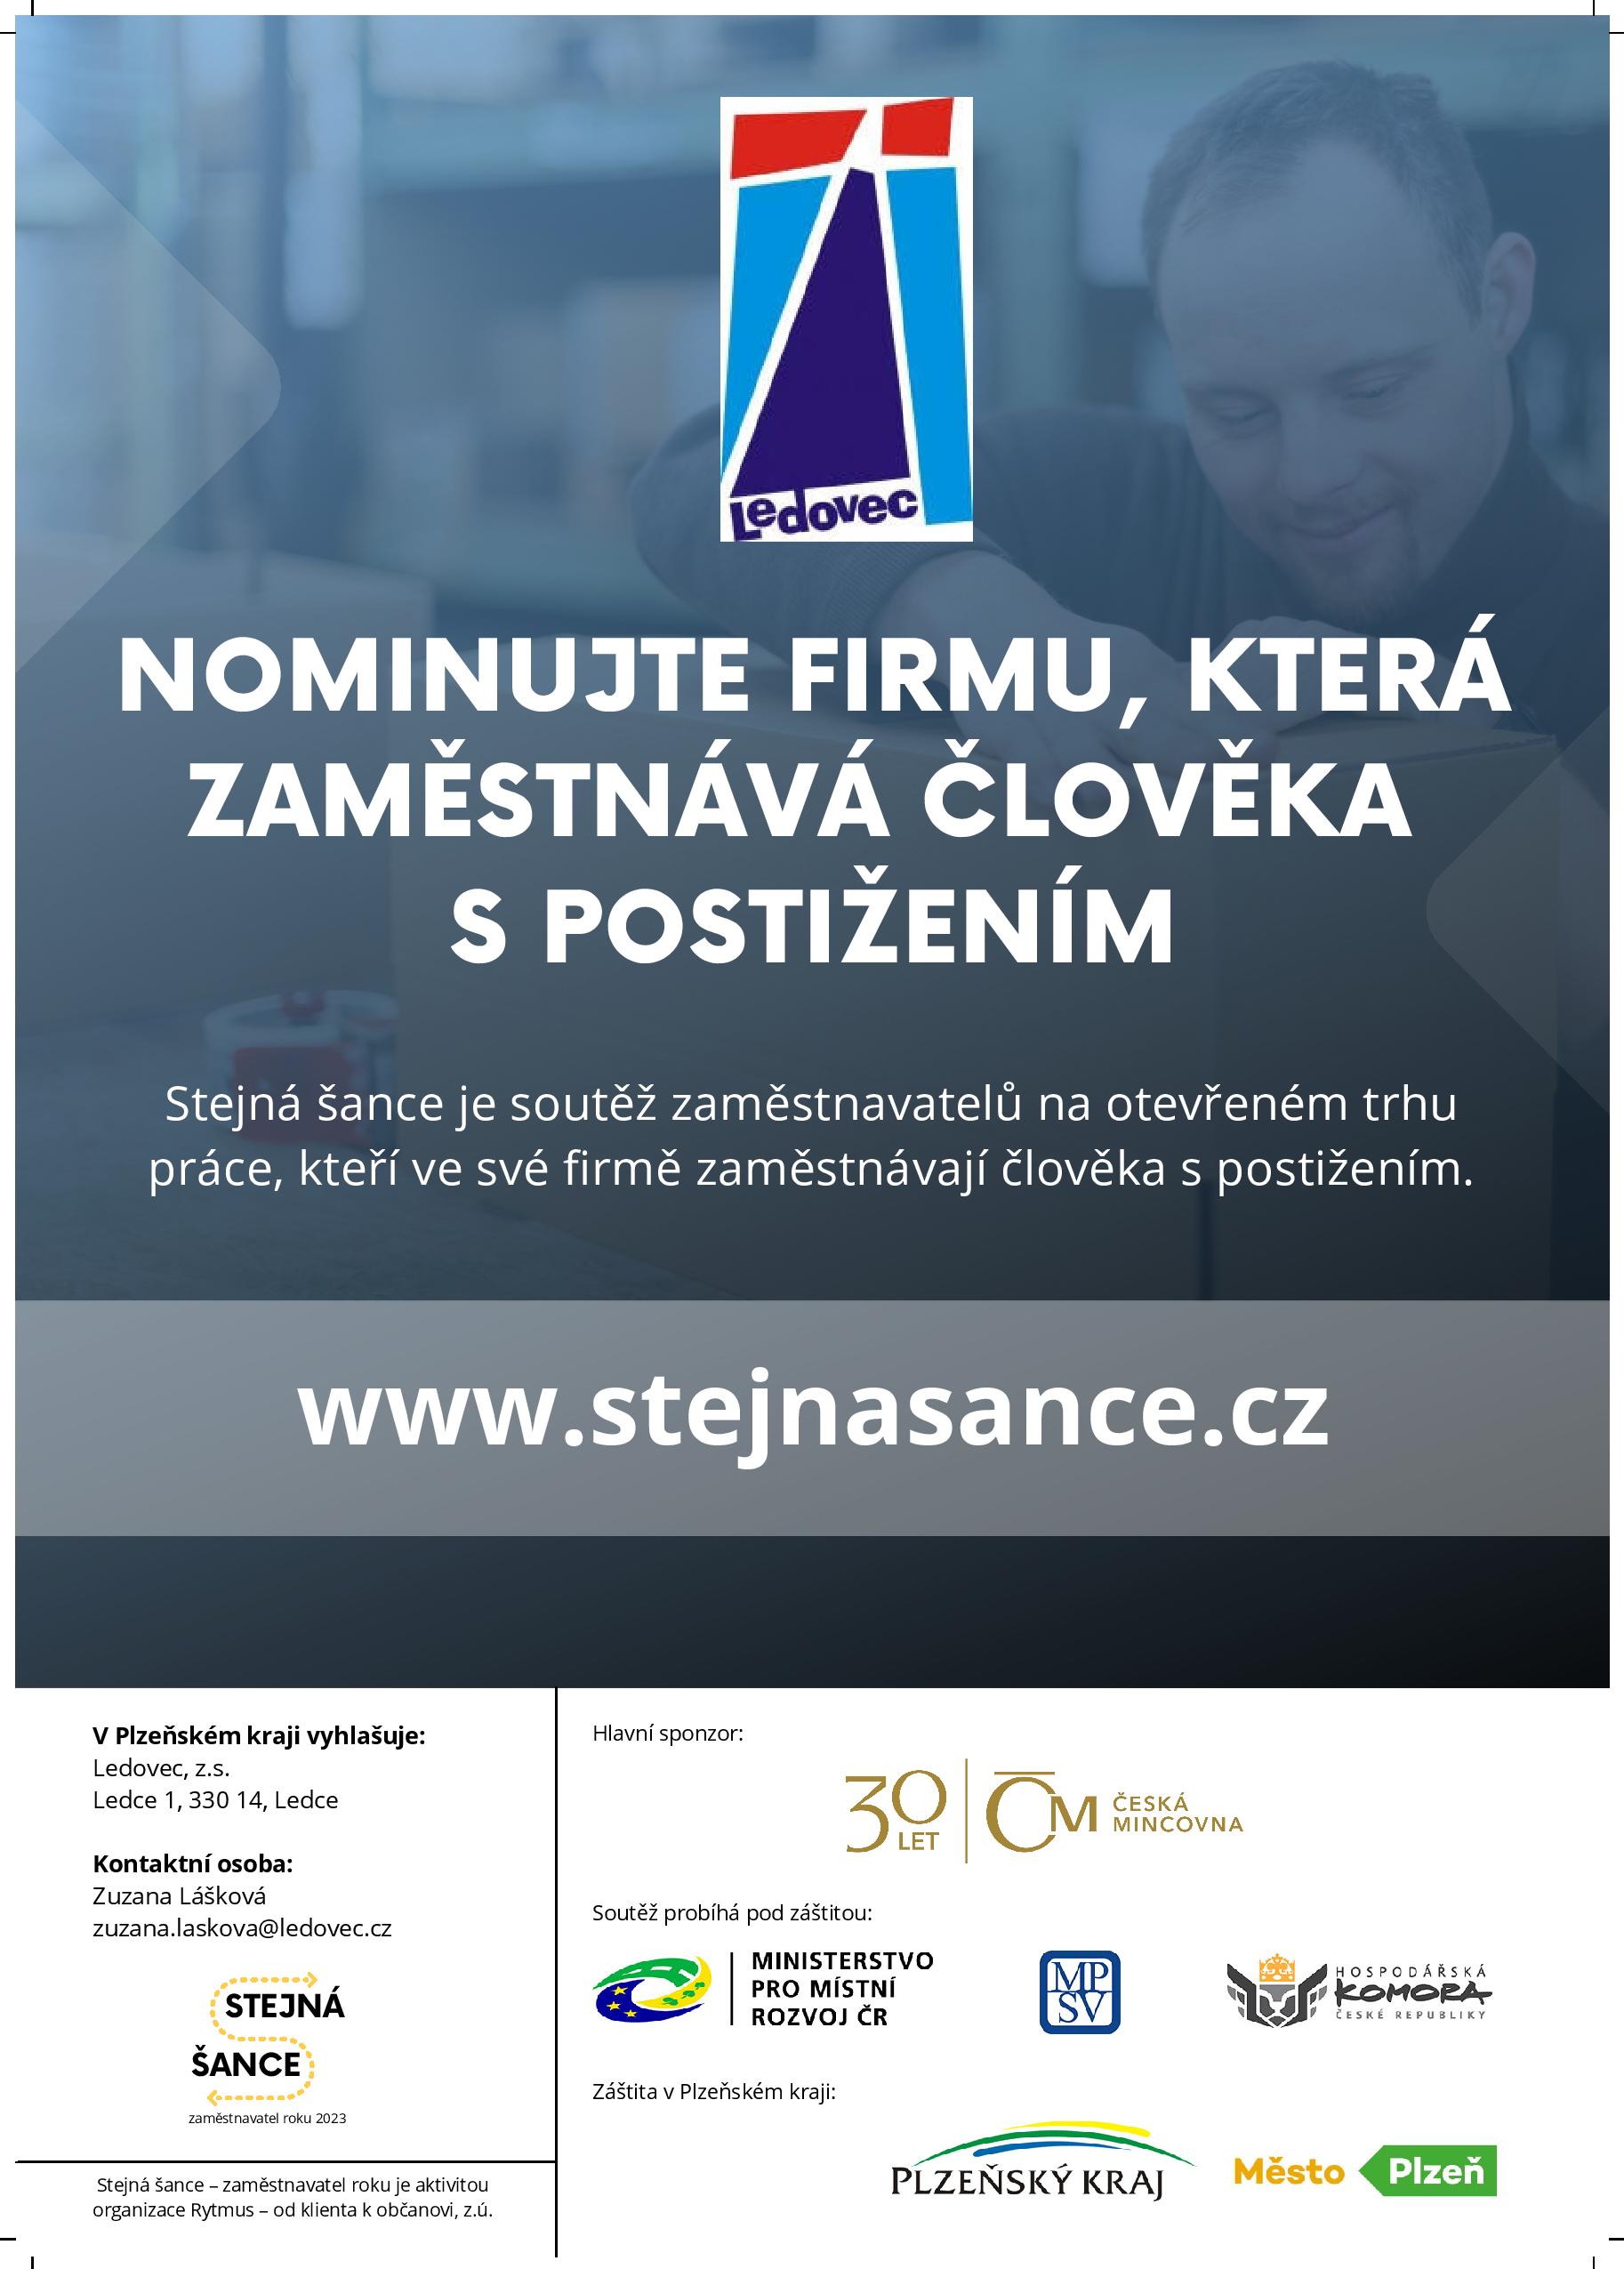 Stejná šance 2023 poster Plzeňský page 001